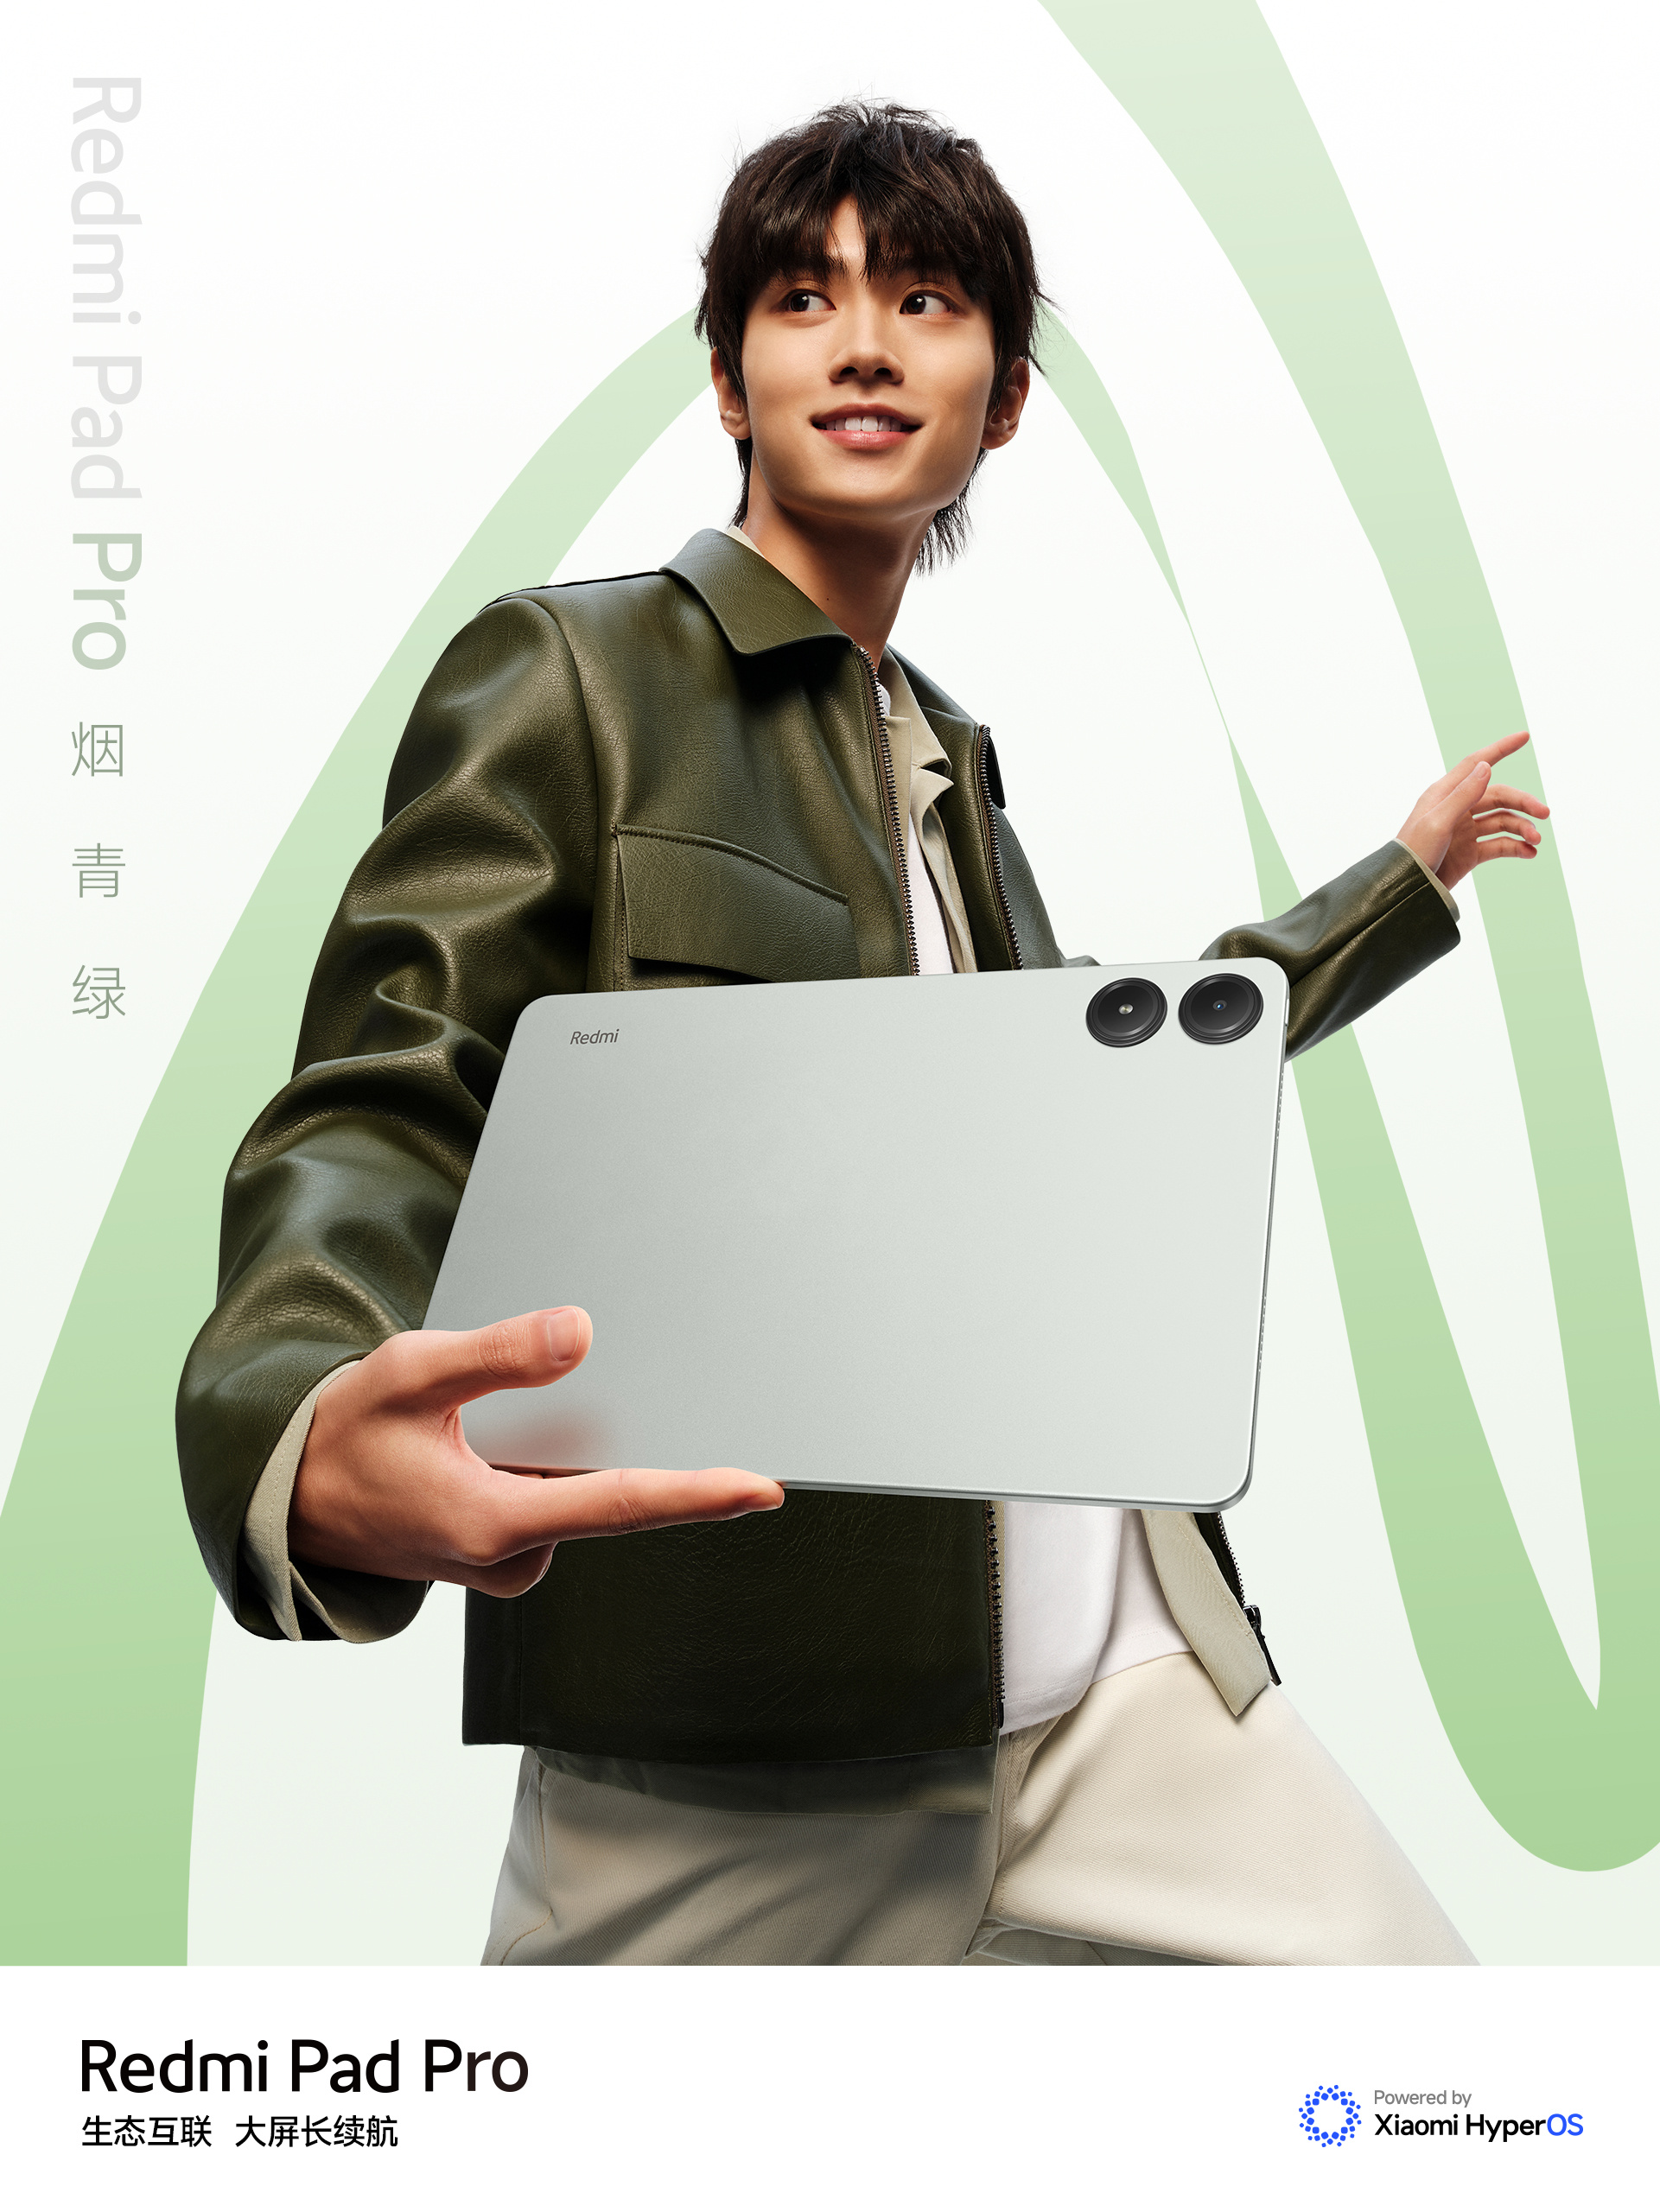 Xiaomi ra mắt máy tính bảng đẹp như iPad, chip Snapdragon 7s Gen 2 mạnh mẽ, pin 10.000mAh, giá chỉ hơn 5 triệu đồng - Ảnh 3.